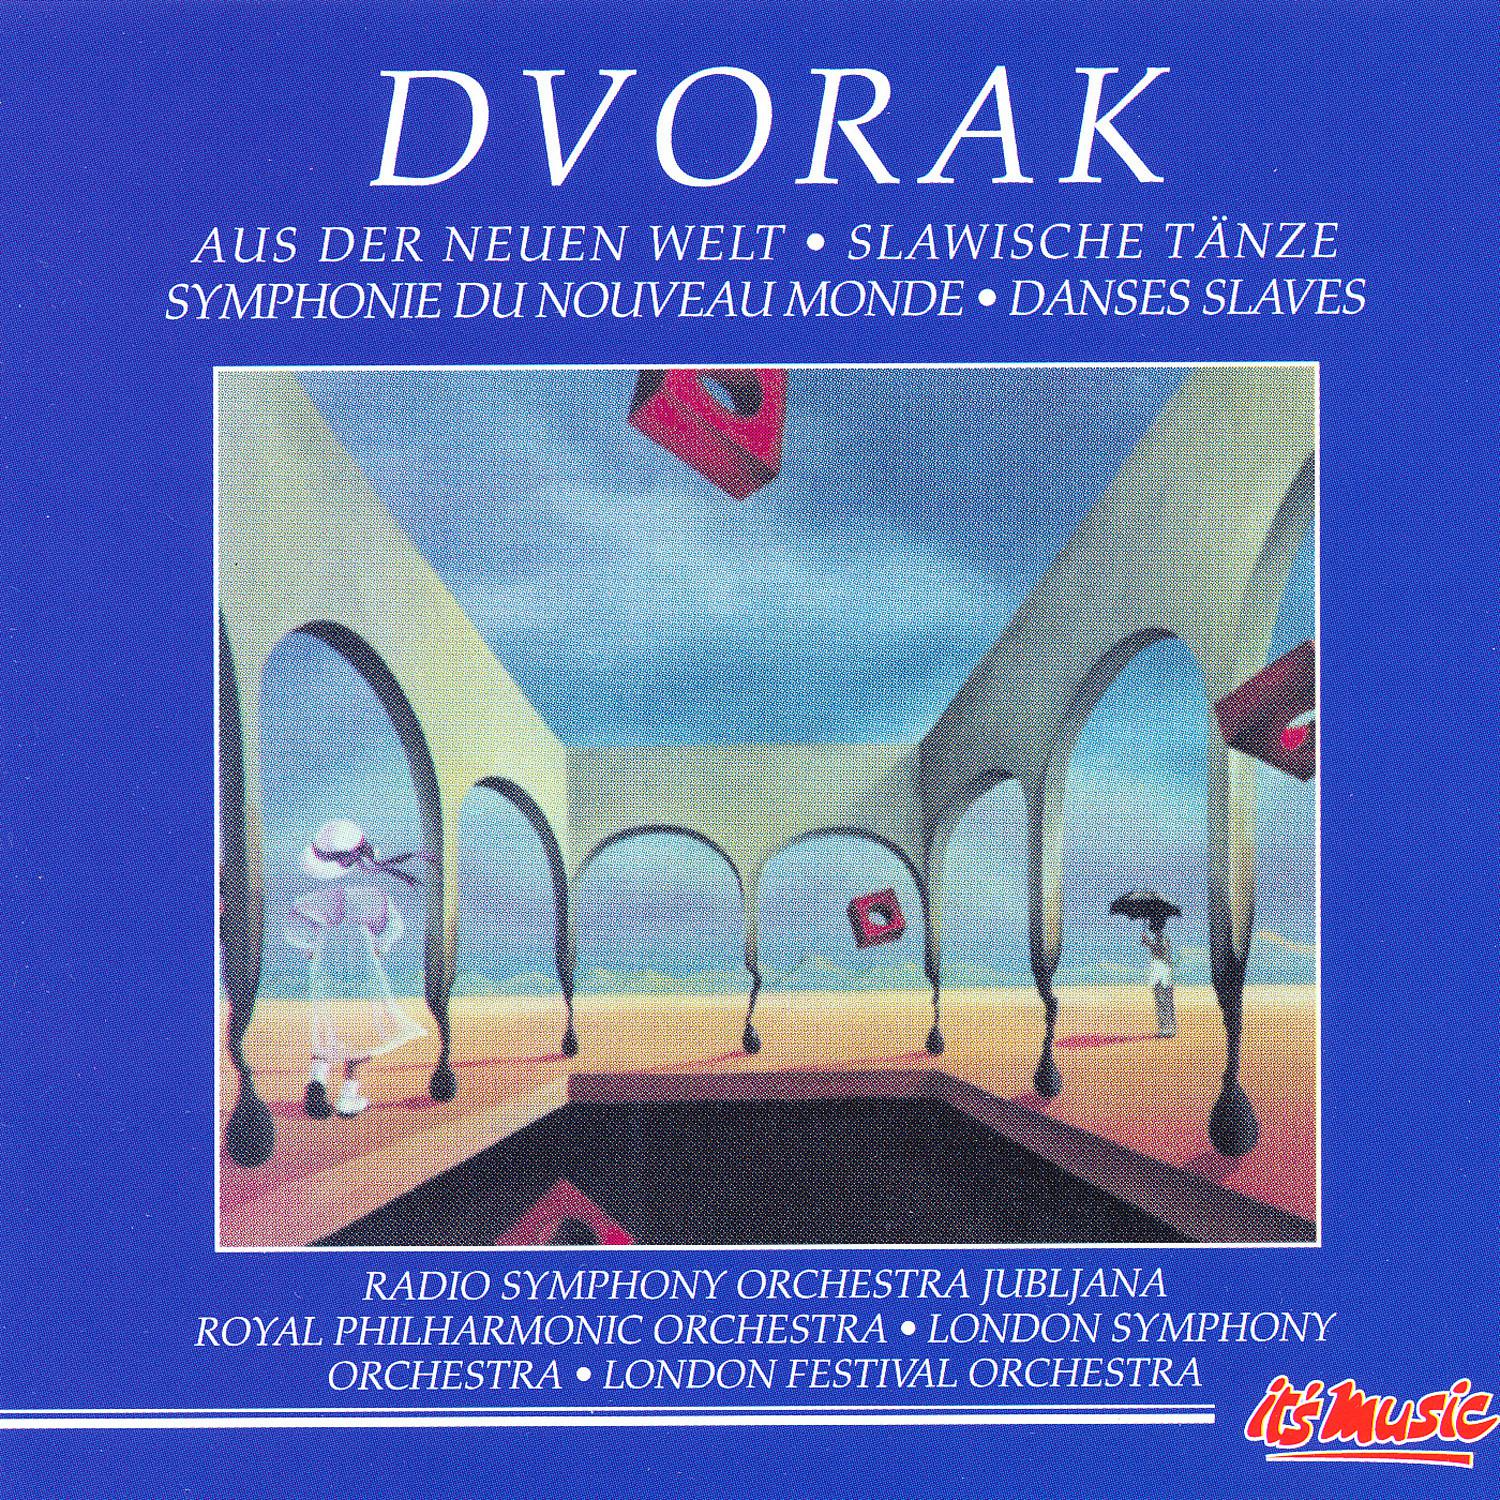 Slavonic Dances Op. 46, Nos. 1-4; No. 3 'Polka' in D major